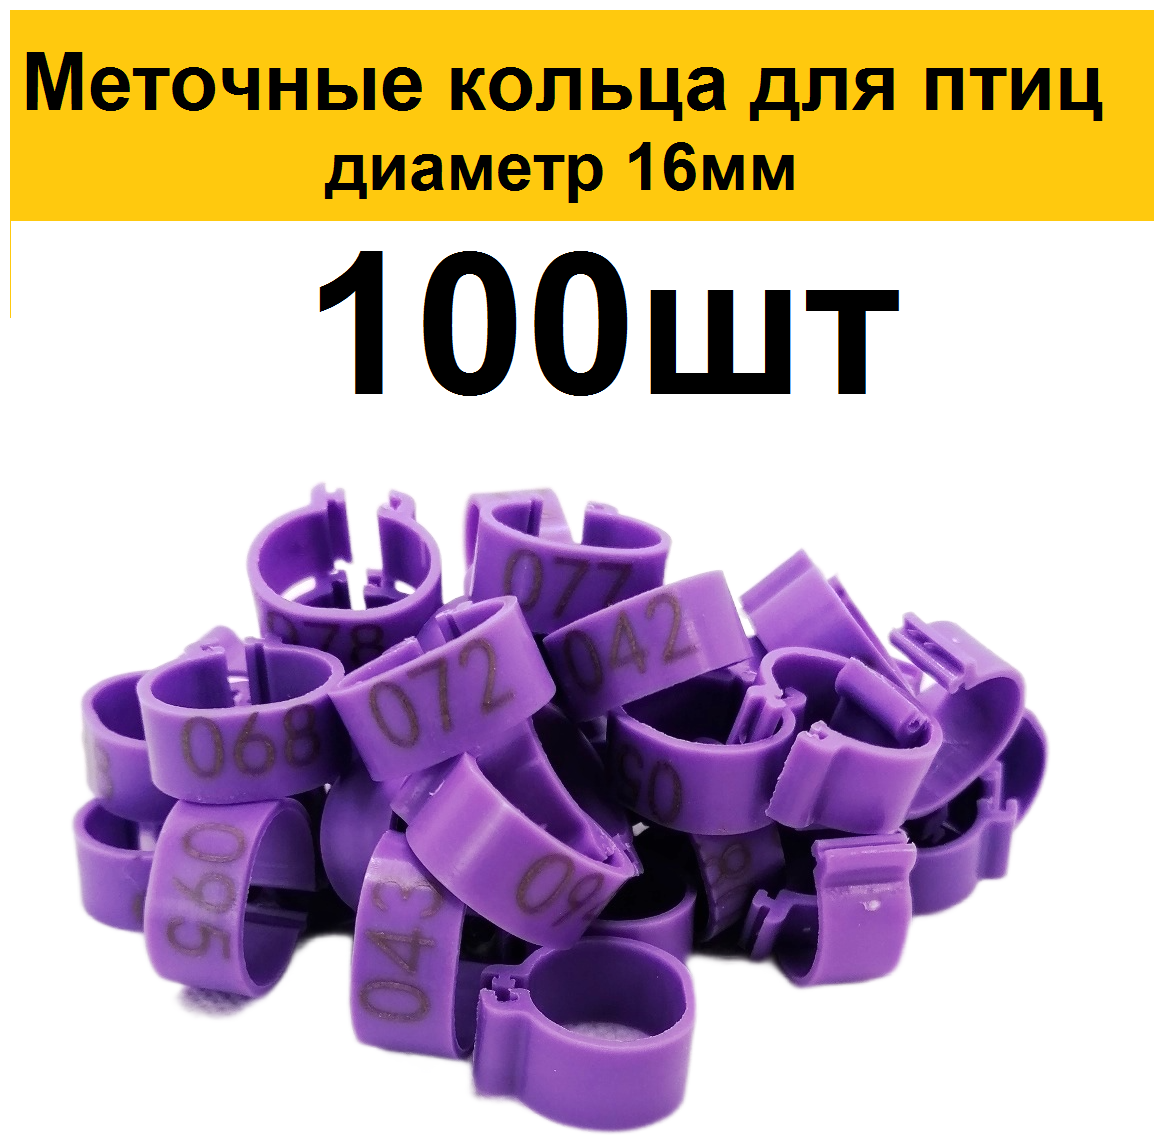 Меточные кольца с цифрами на лапу для кур (100шт) фиолетовый. Маркировочные метки для маркировки кольцевания курей несушек, фазанов, цыплят бройлеров